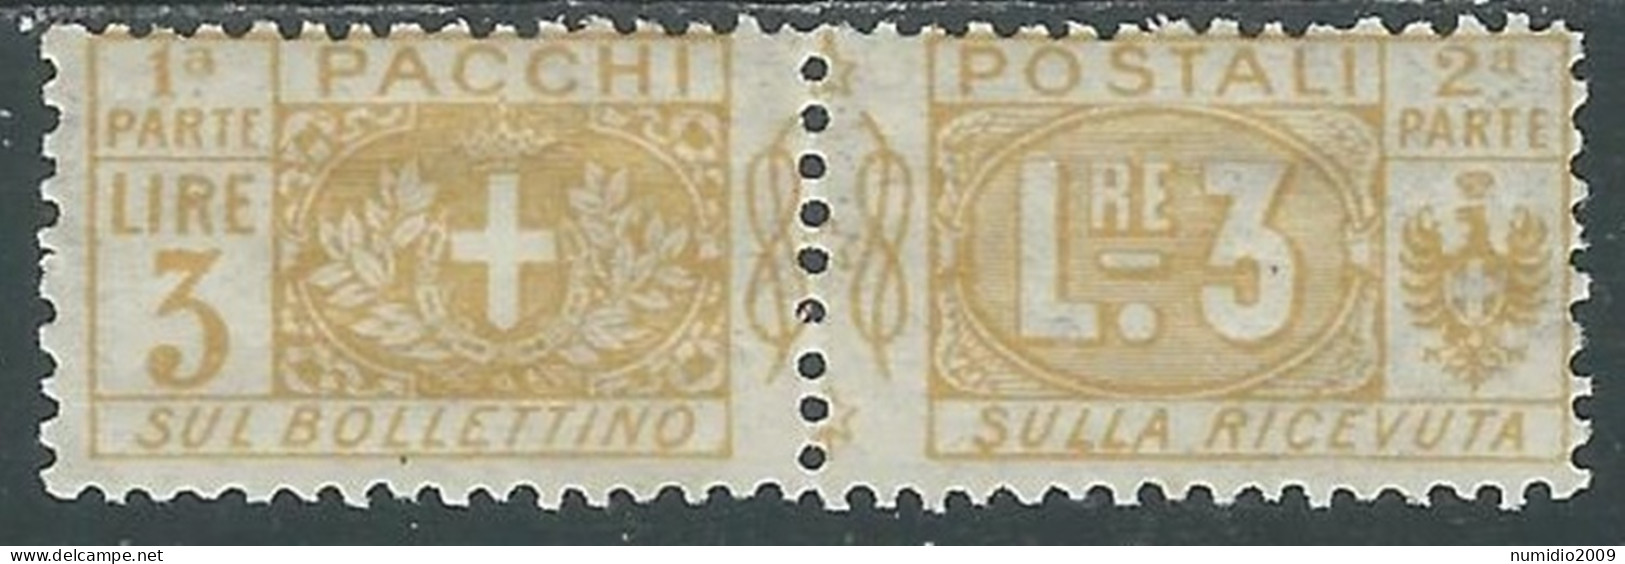 1914-22 REGNO PACCHI POSTALI 3 LIRE MH * - P31-3 - Paketmarken